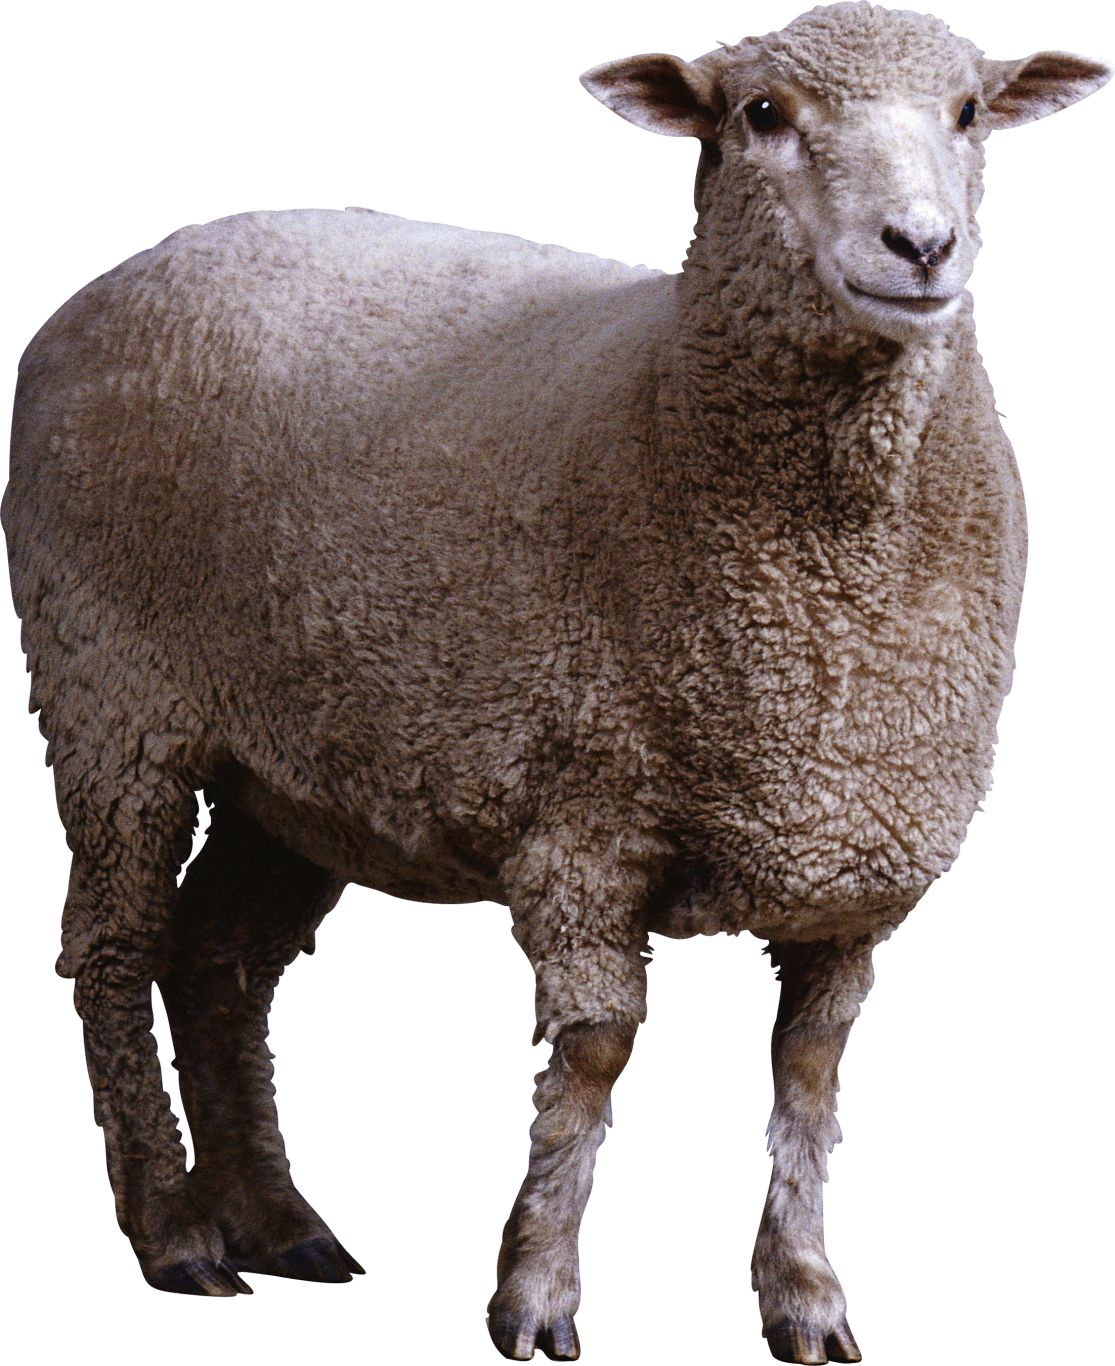 sheep PNG image    图片编号:96492